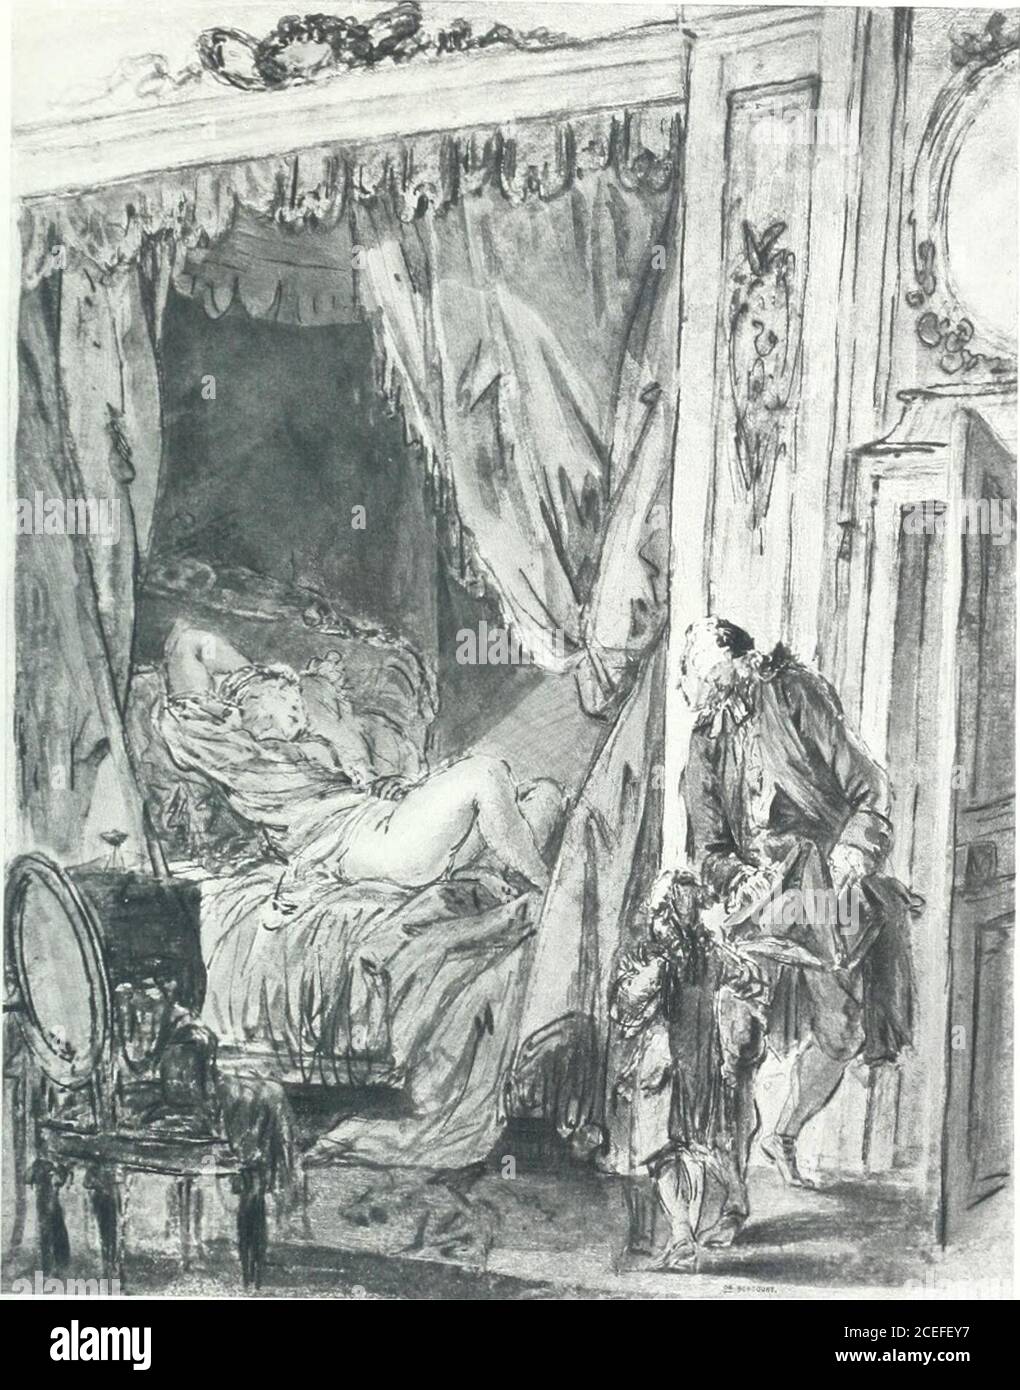 Collection des Goncourt; dessins, aquarelles et pastels du 18e siècle.  PIERRE-ANTOINE) — le Matin. Un gouverneur pénétrant avec son élève dans  unechambre à coucher, où se voit, sur un lit, une